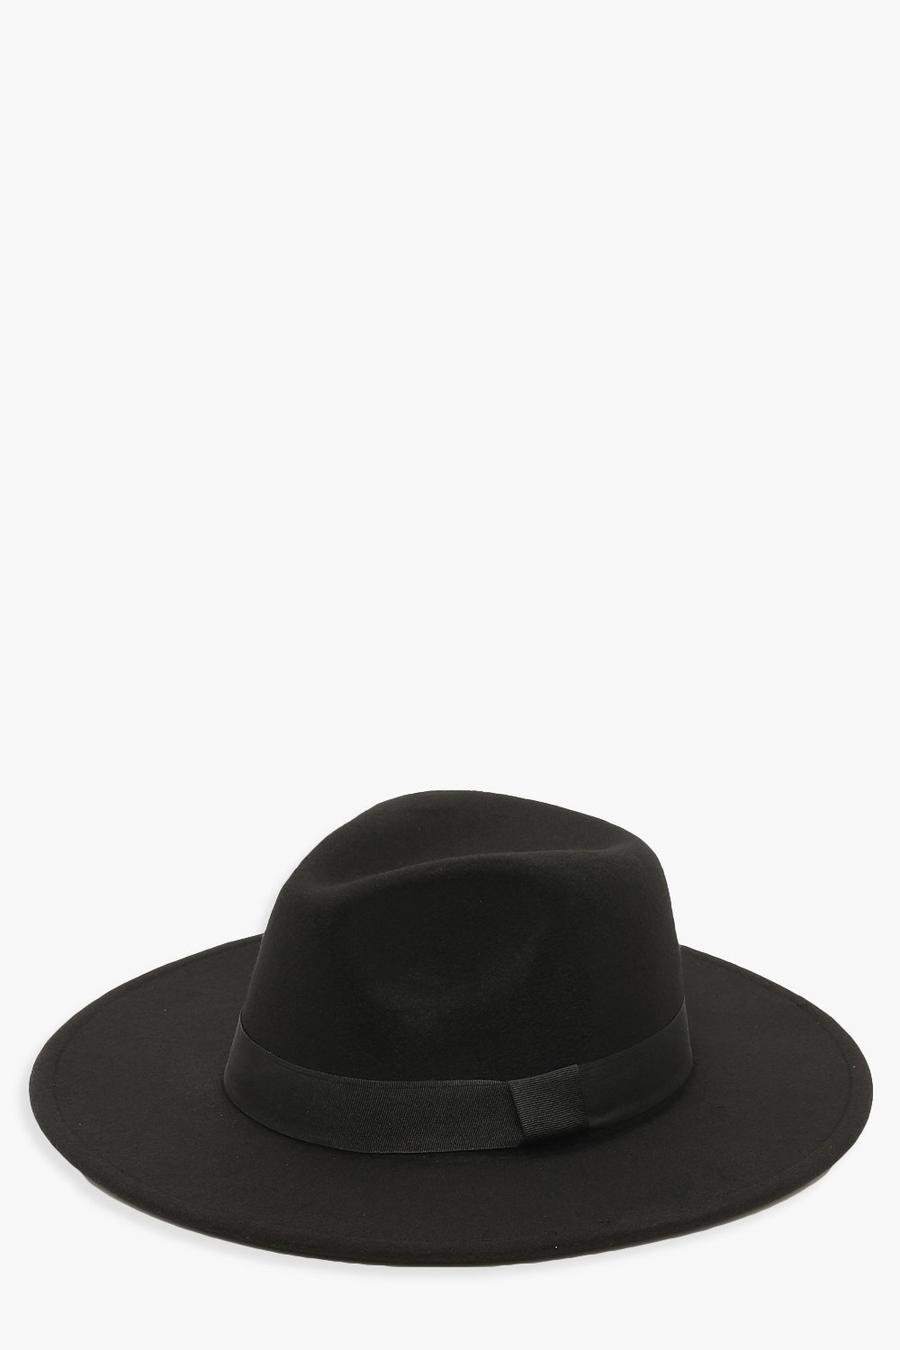 שחור nero כובע פדורה עם עיטור סרט